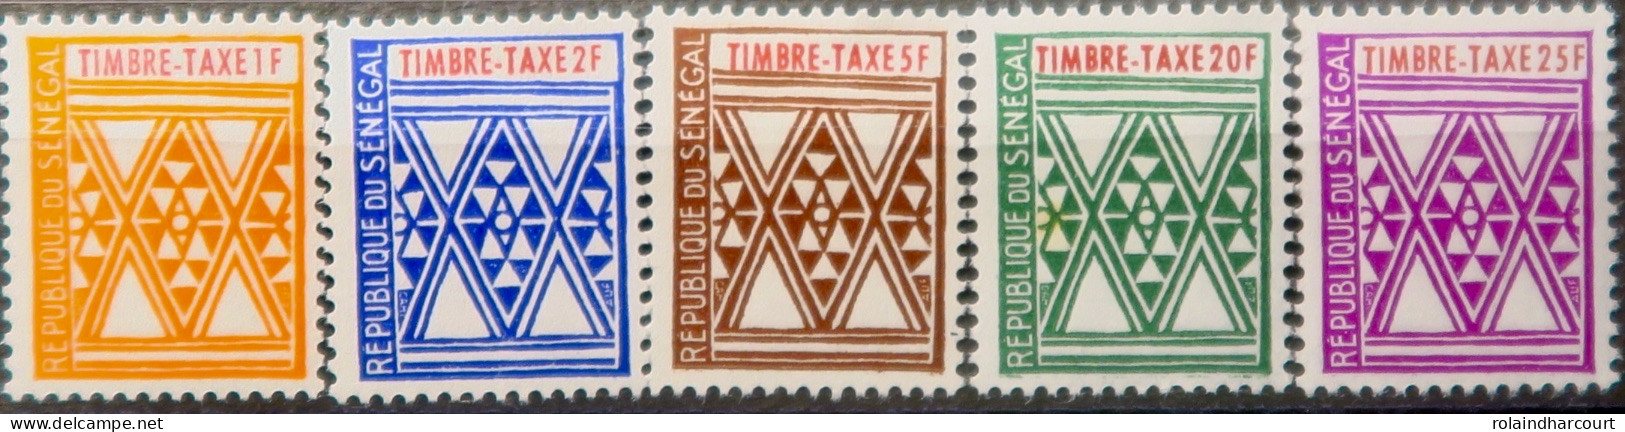 R2253/818 - SENEGAL - 1961 - TIMBRES TAXE - SERIE COMPLETE - N°32 à 36 NEUFS* - Sénégal (1960-...)